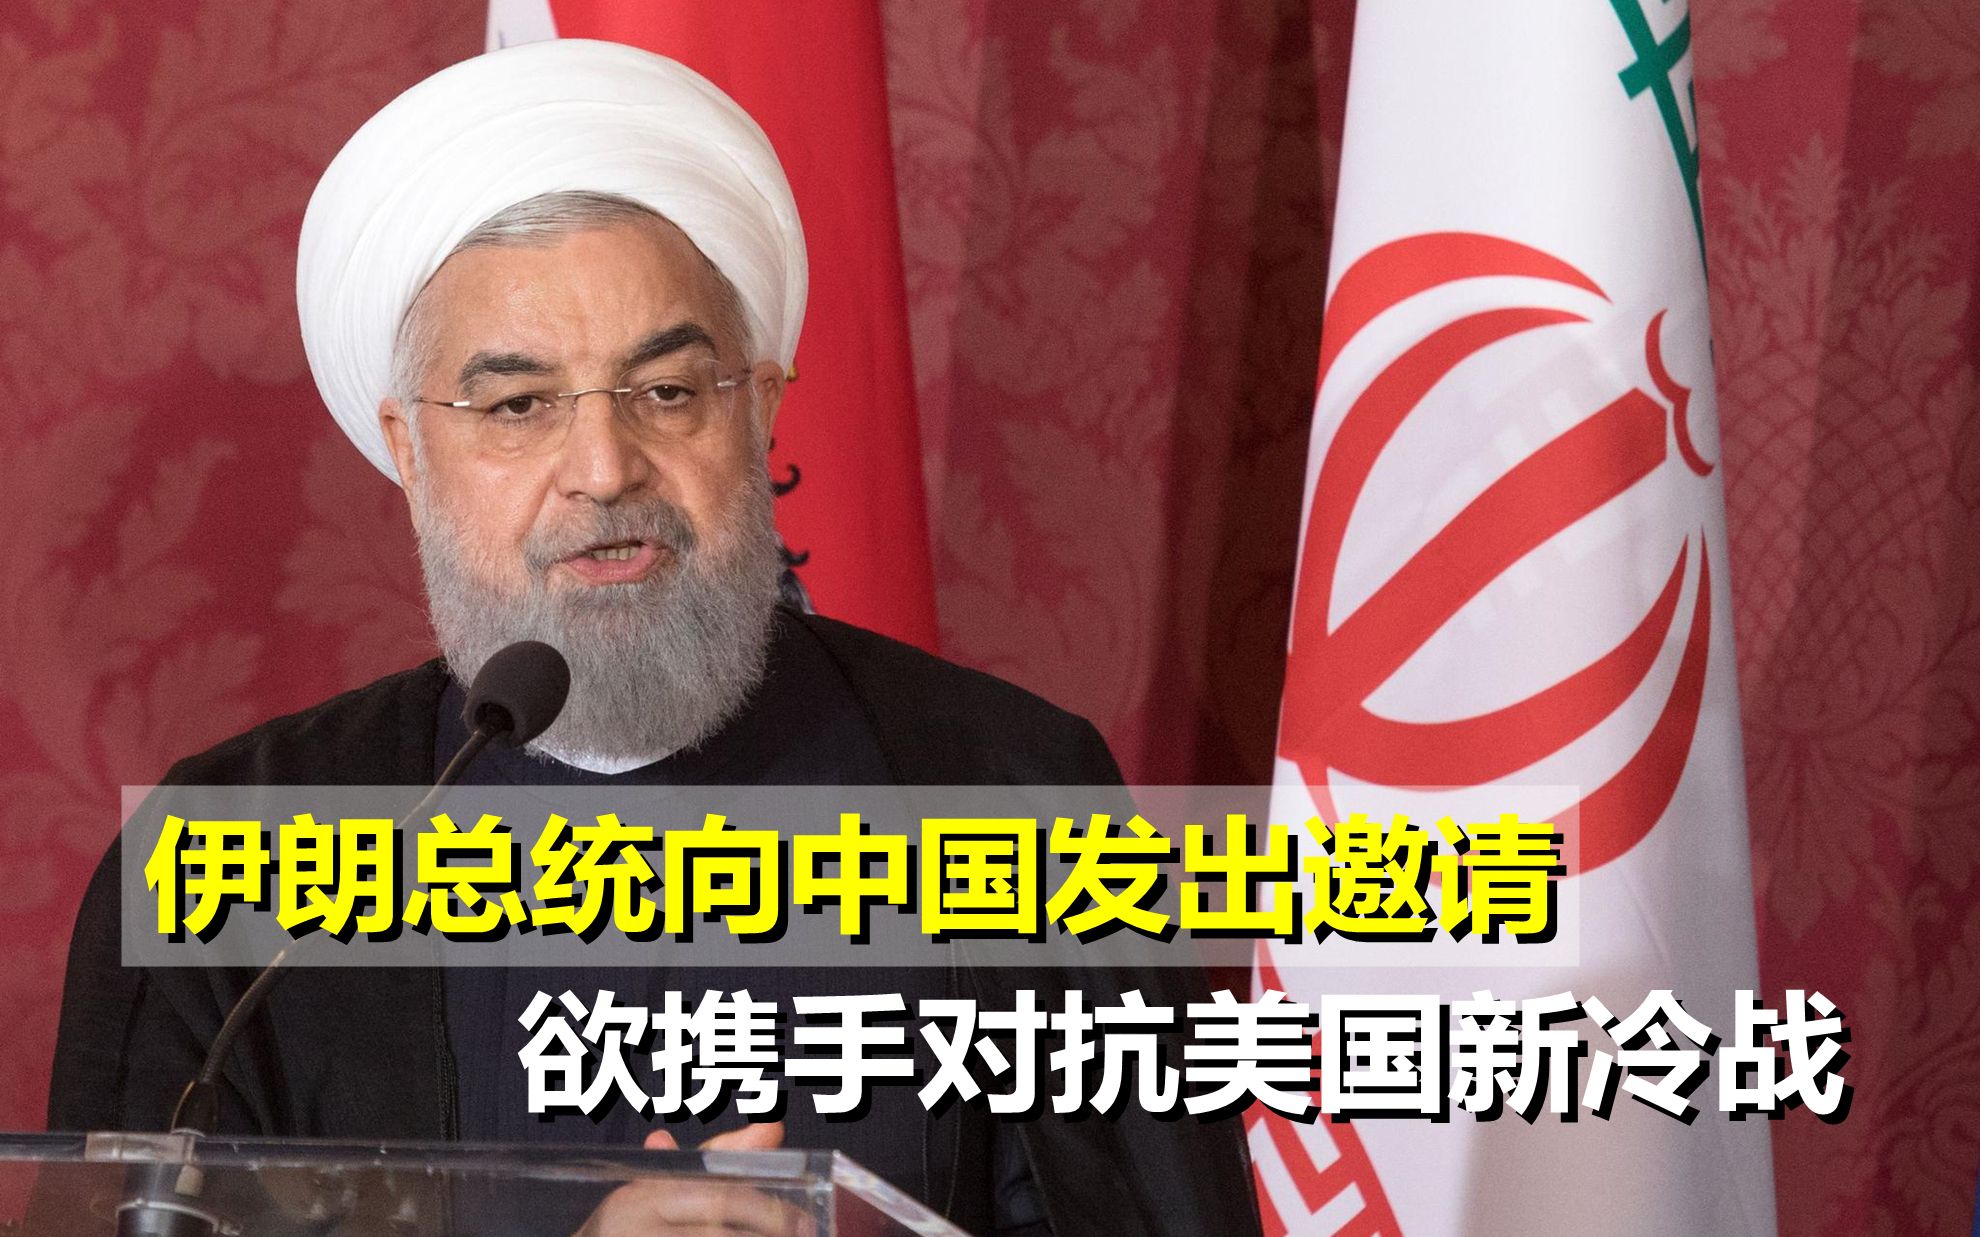 要转守为攻？伊朗总统向中国发出邀请，欲携手对抗美国新冷战